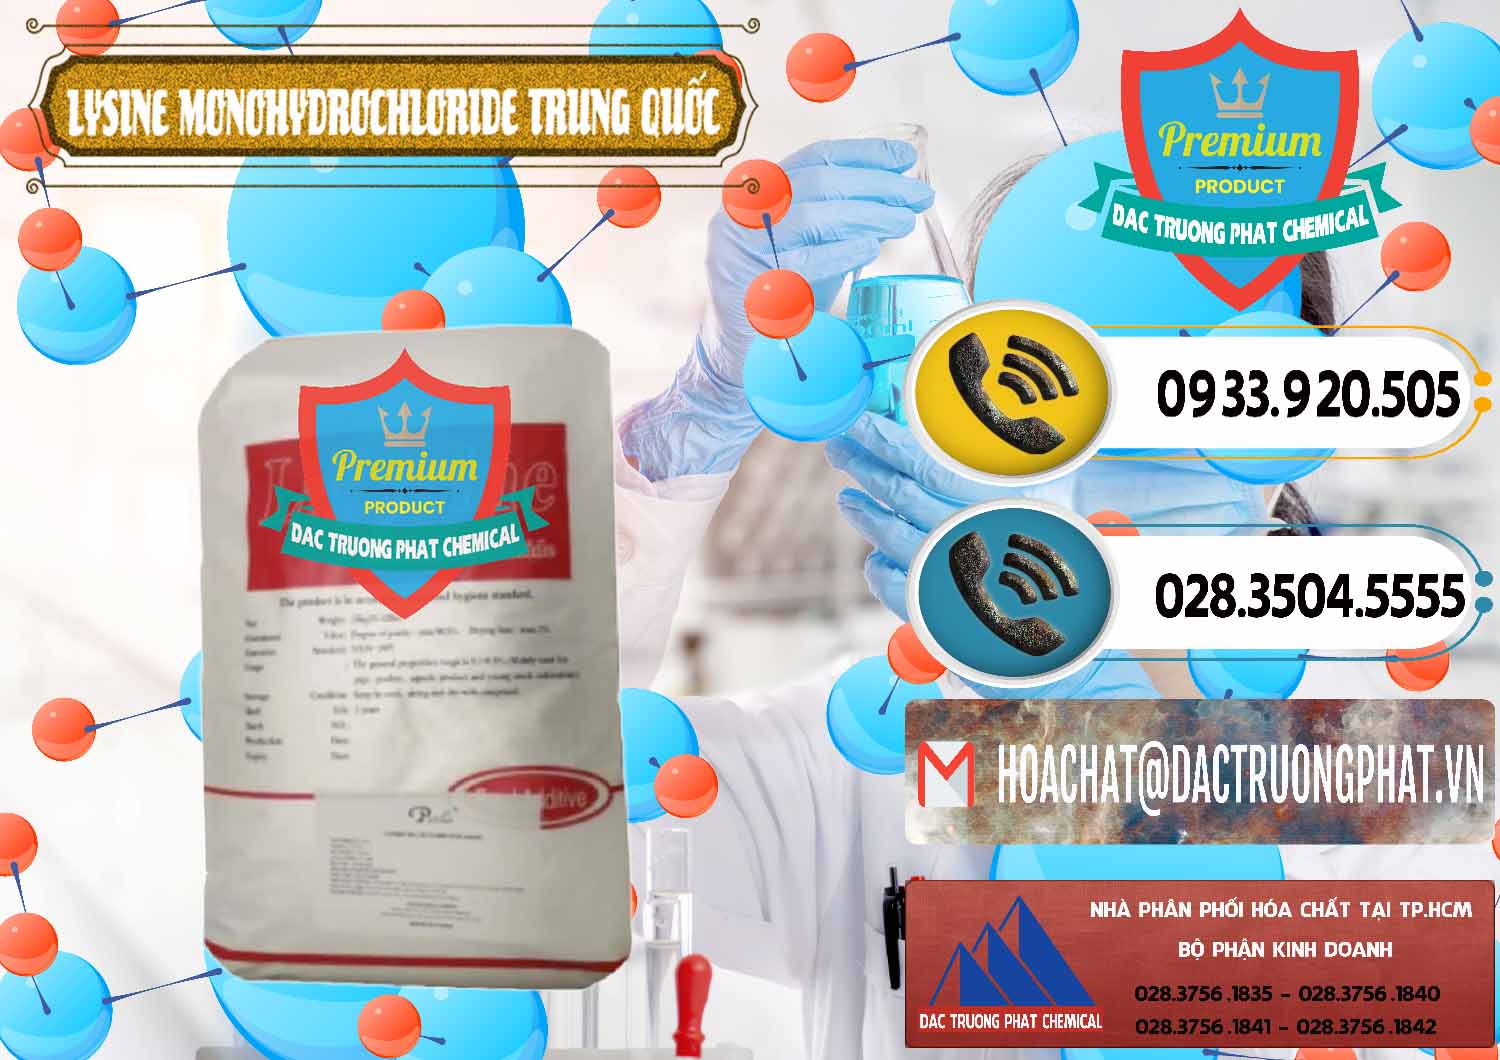 Công ty cung ứng và bán L-Lysine Monohydrochloride Feed Grade Trung Quốc China - 0454 - Công ty chuyên cung ứng và phân phối hóa chất tại TP.HCM - hoachatdetnhuom.vn